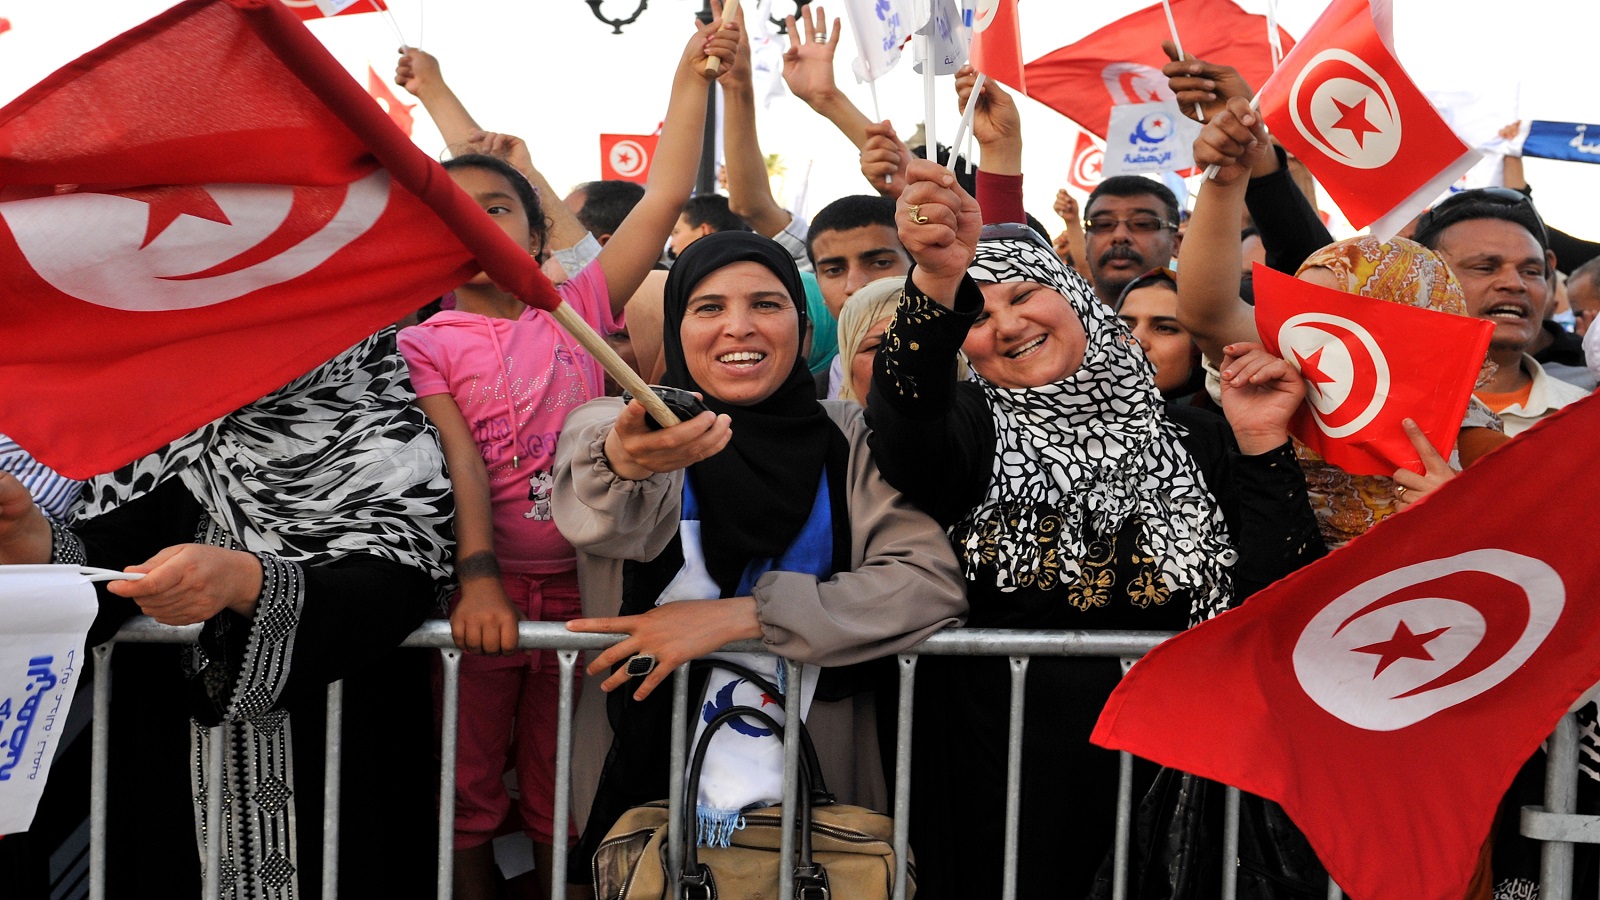 حركة النهضة تخوض انتخابات الرئاسة:ديموقراطية تونس بخير